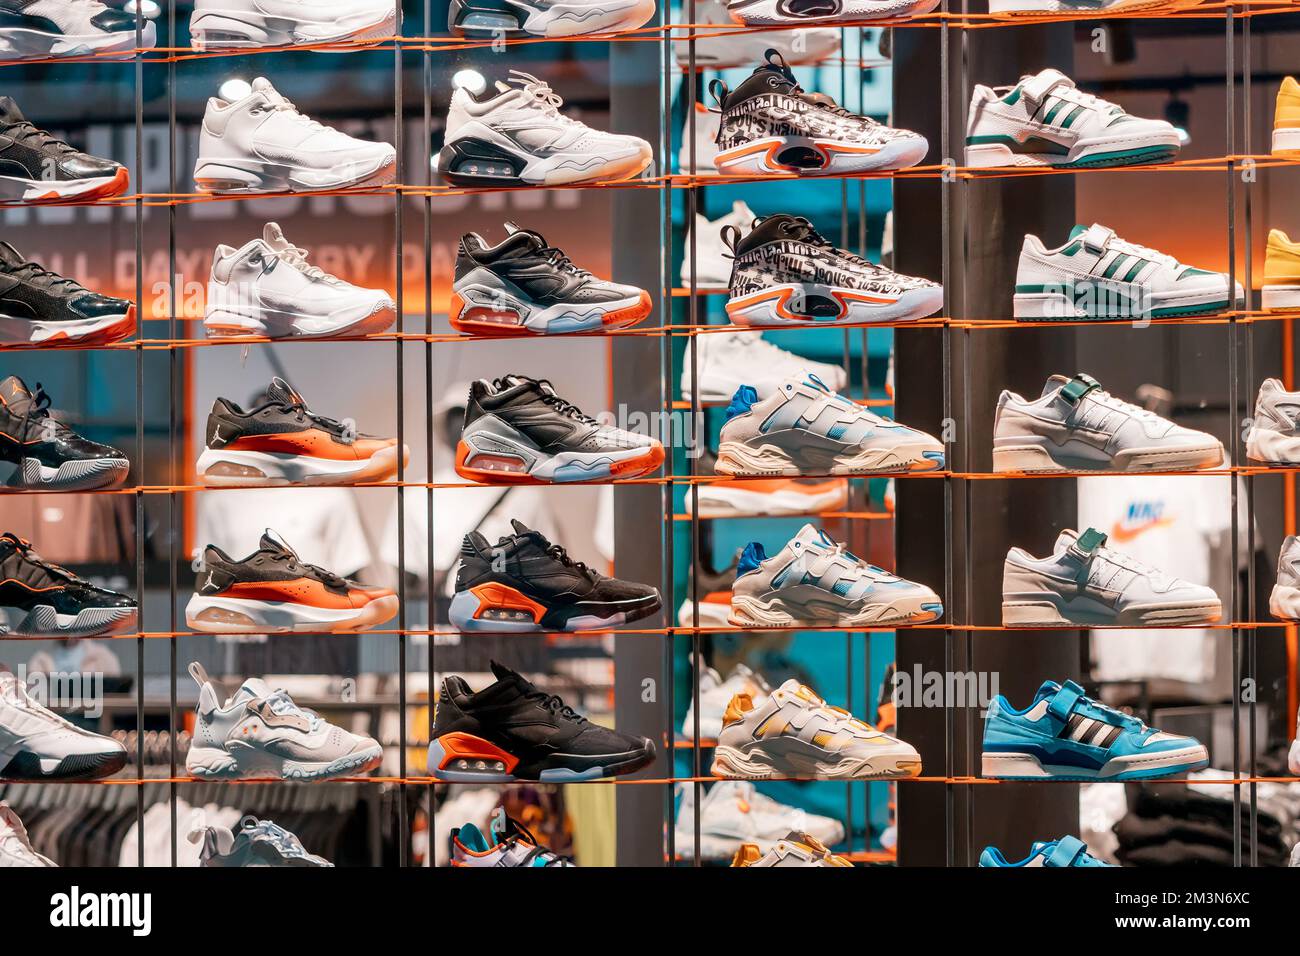 31. Juli 2022, Köln, Deutschland: Sportliche bequeme Schuhe oder Turnschuhe  für Laufen und Sport auf der Ladentheke Stockfotografie - Alamy